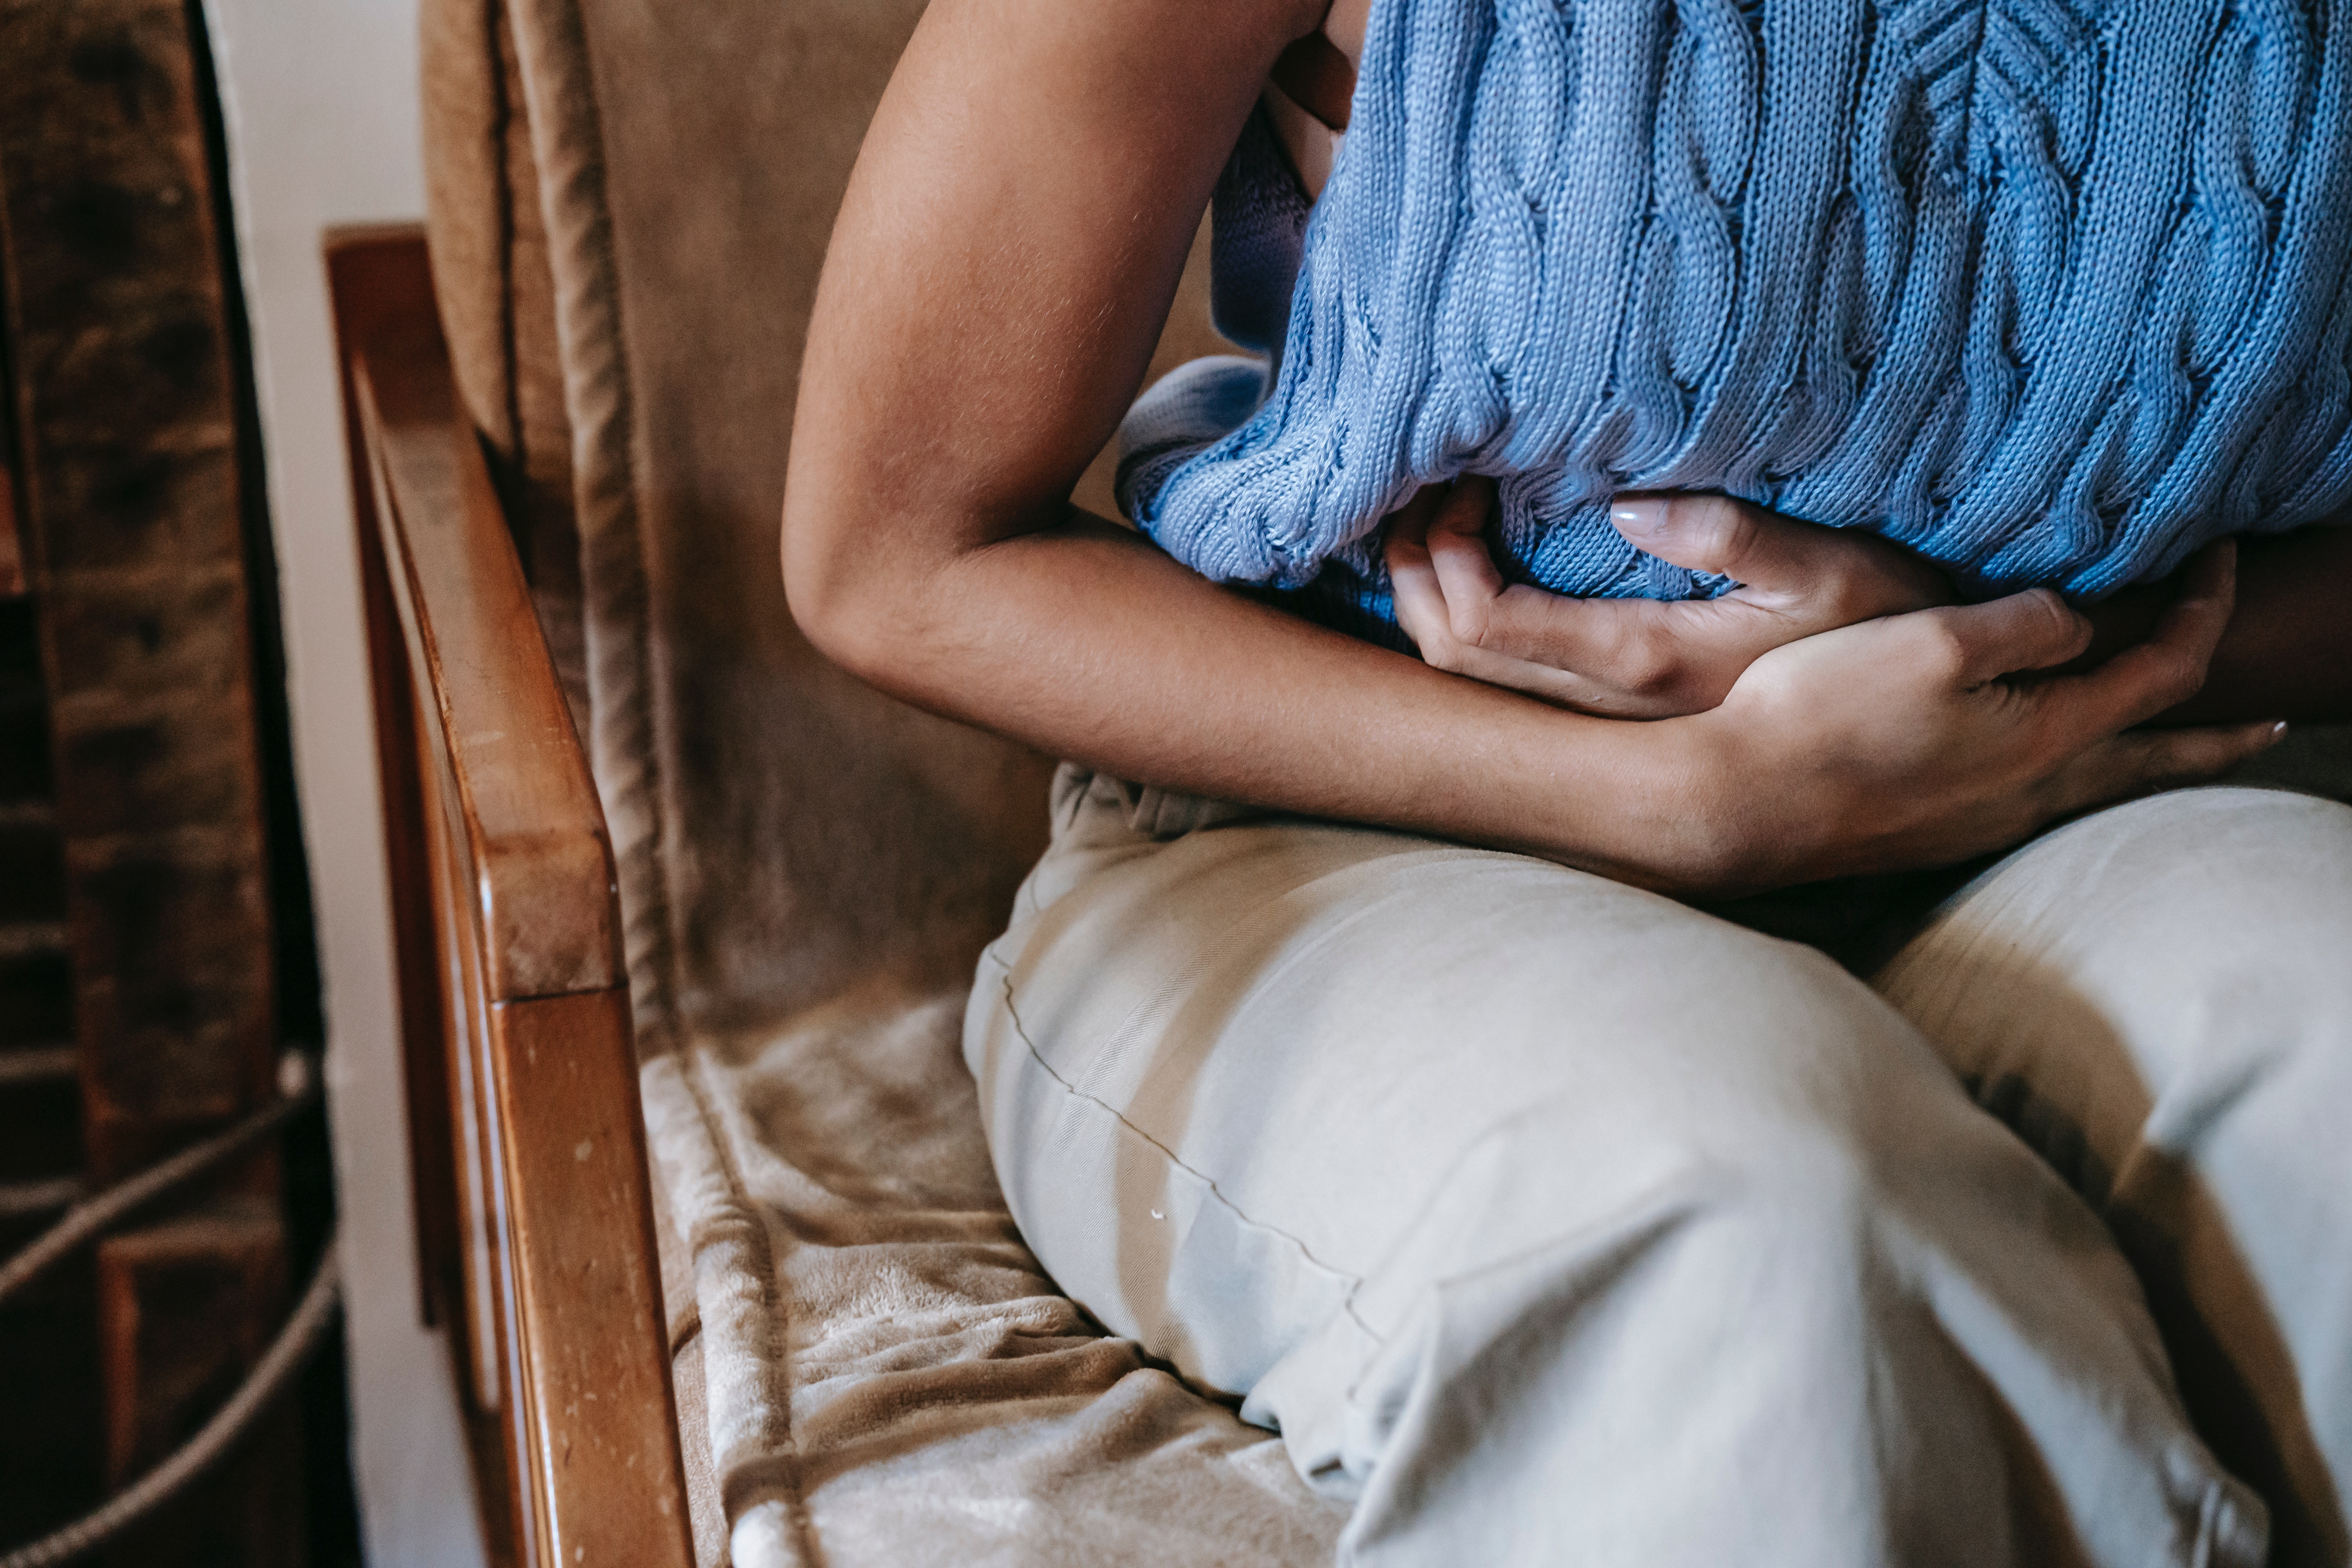 Douleurs abdominales, ballonnements : des symptômes rencontrés dans le syndrome du côlon irritable. © Sora Shimazaki, Pexels